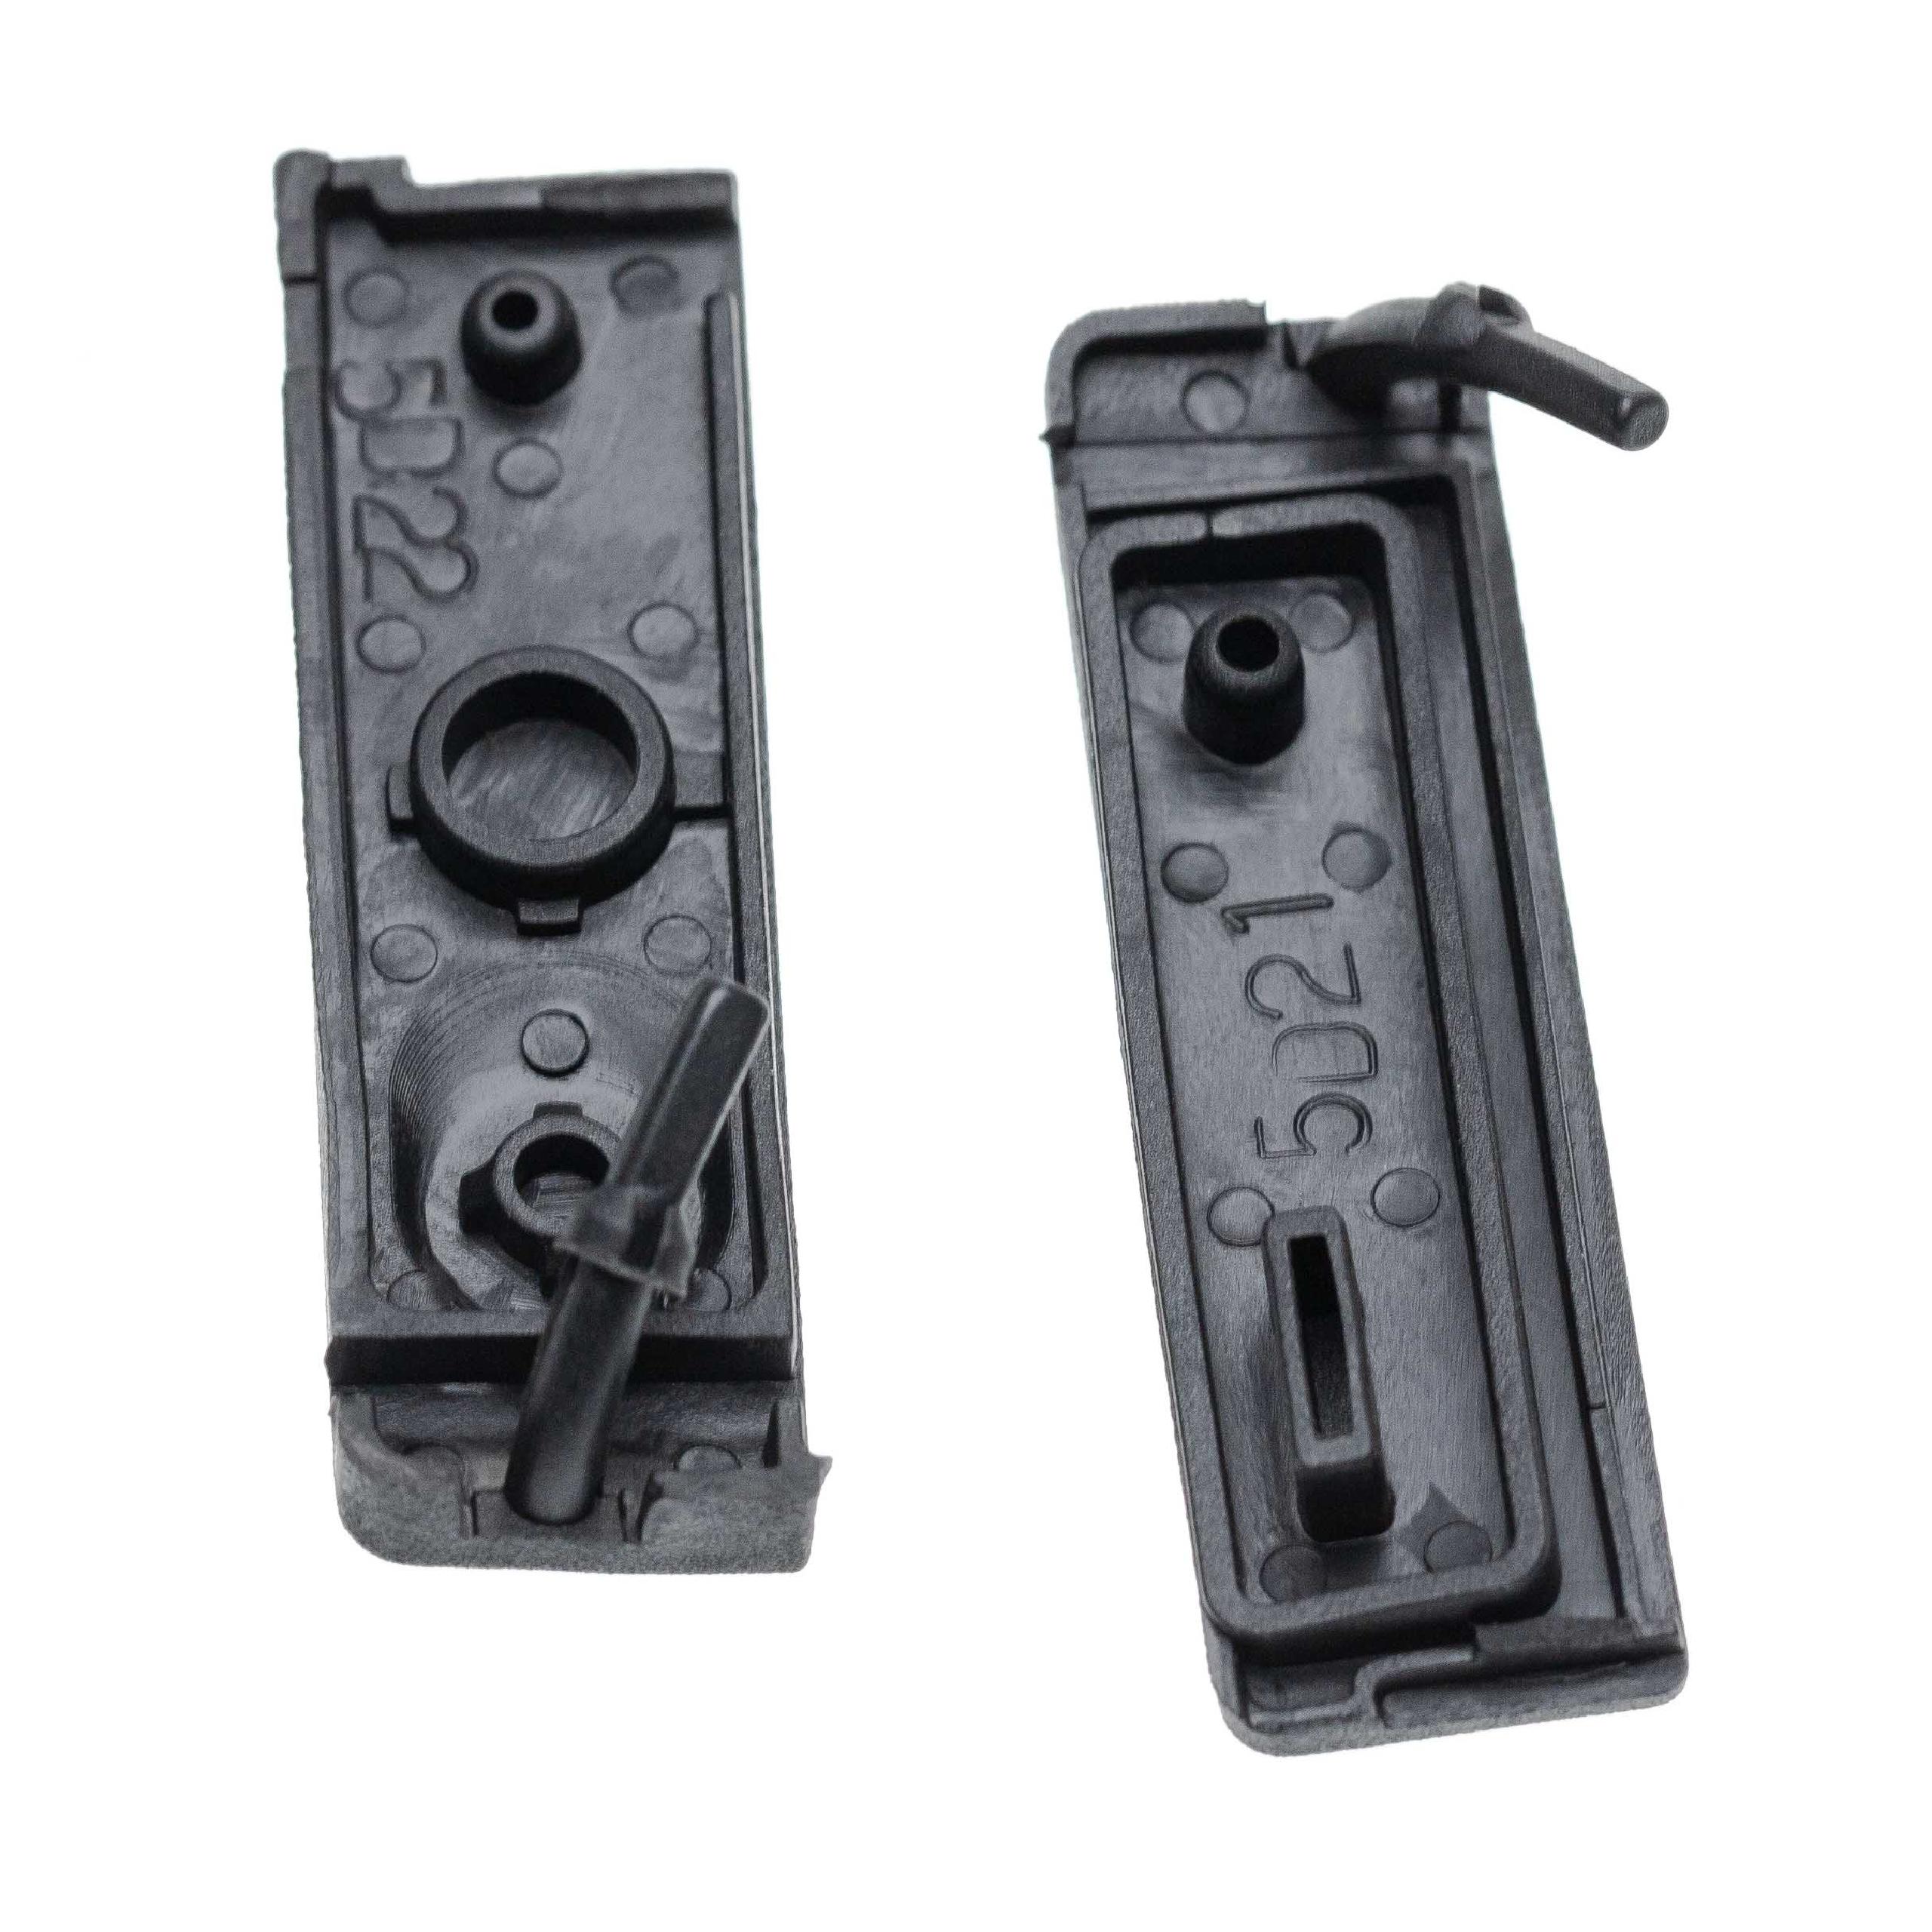 2x Kontaktabdeckungen passend für Canon EOS 5D Mark II Kamera - Ersatz-Abdeckungen für diverse Kamerakontakte